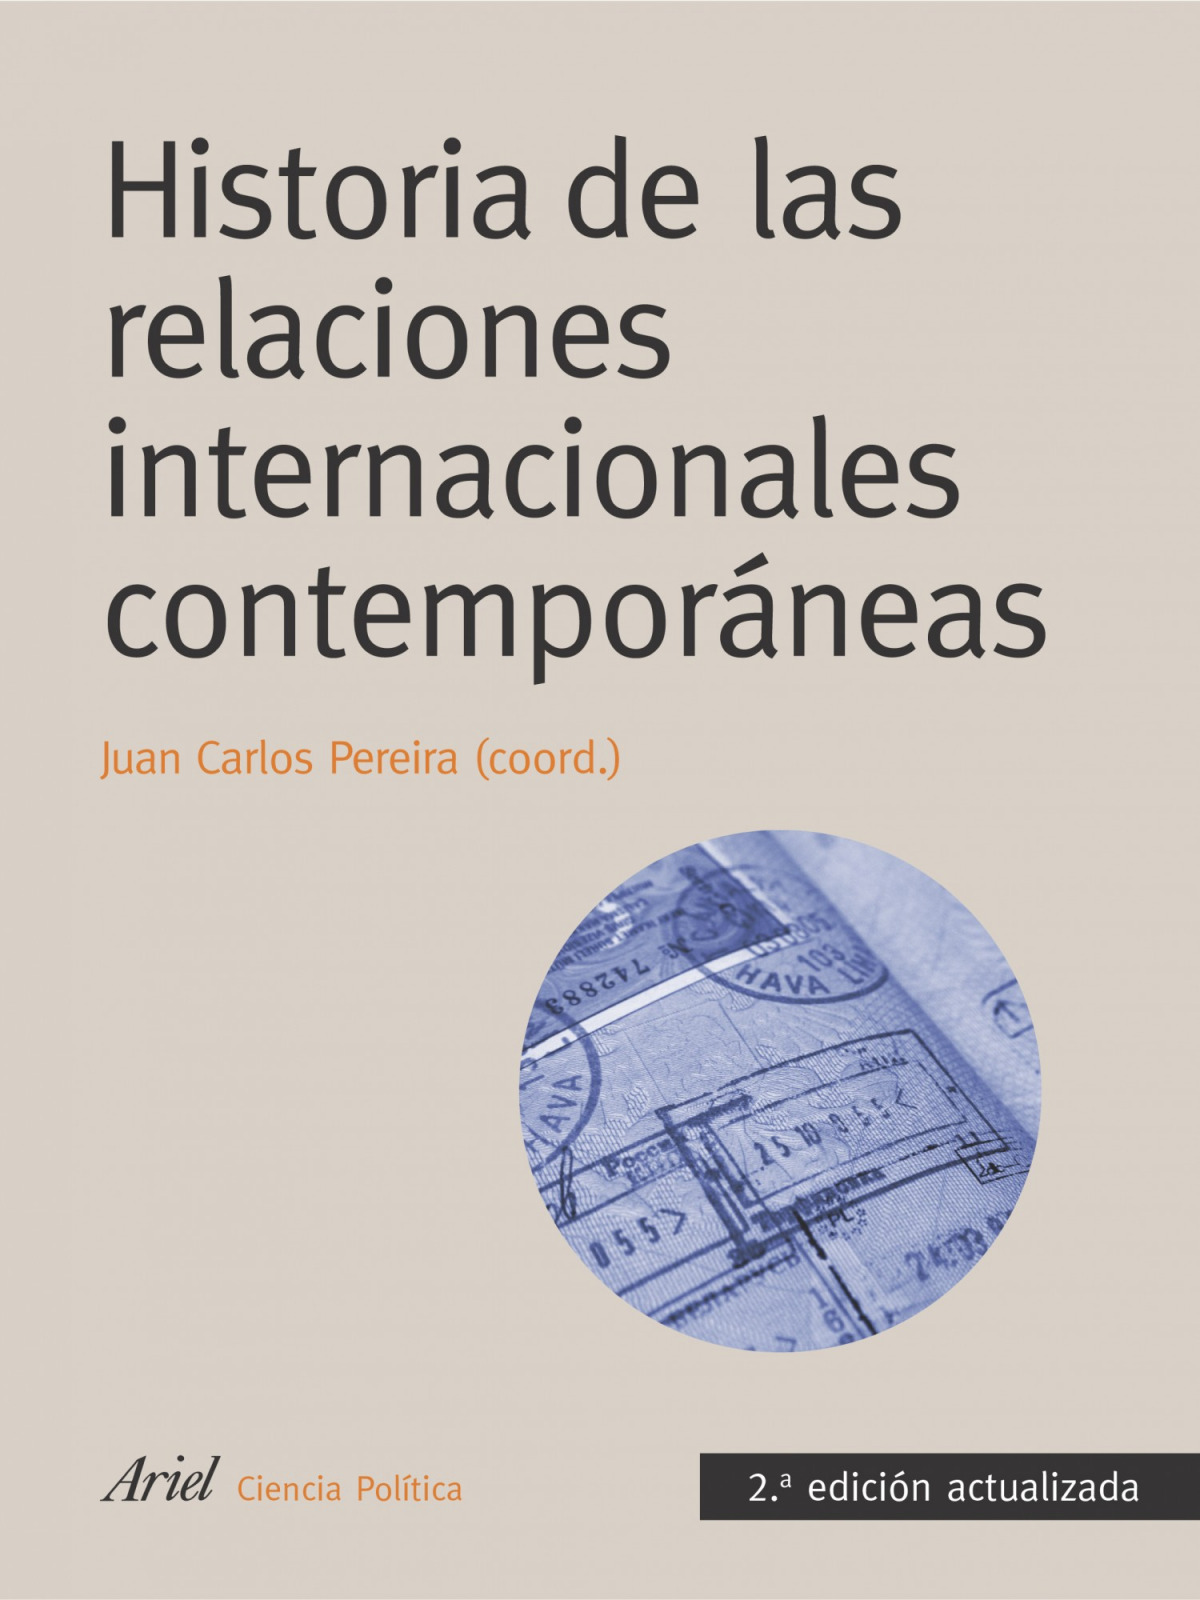 Historia de las relaciones internacionales contemporáneas - Juan Carlos Pereira